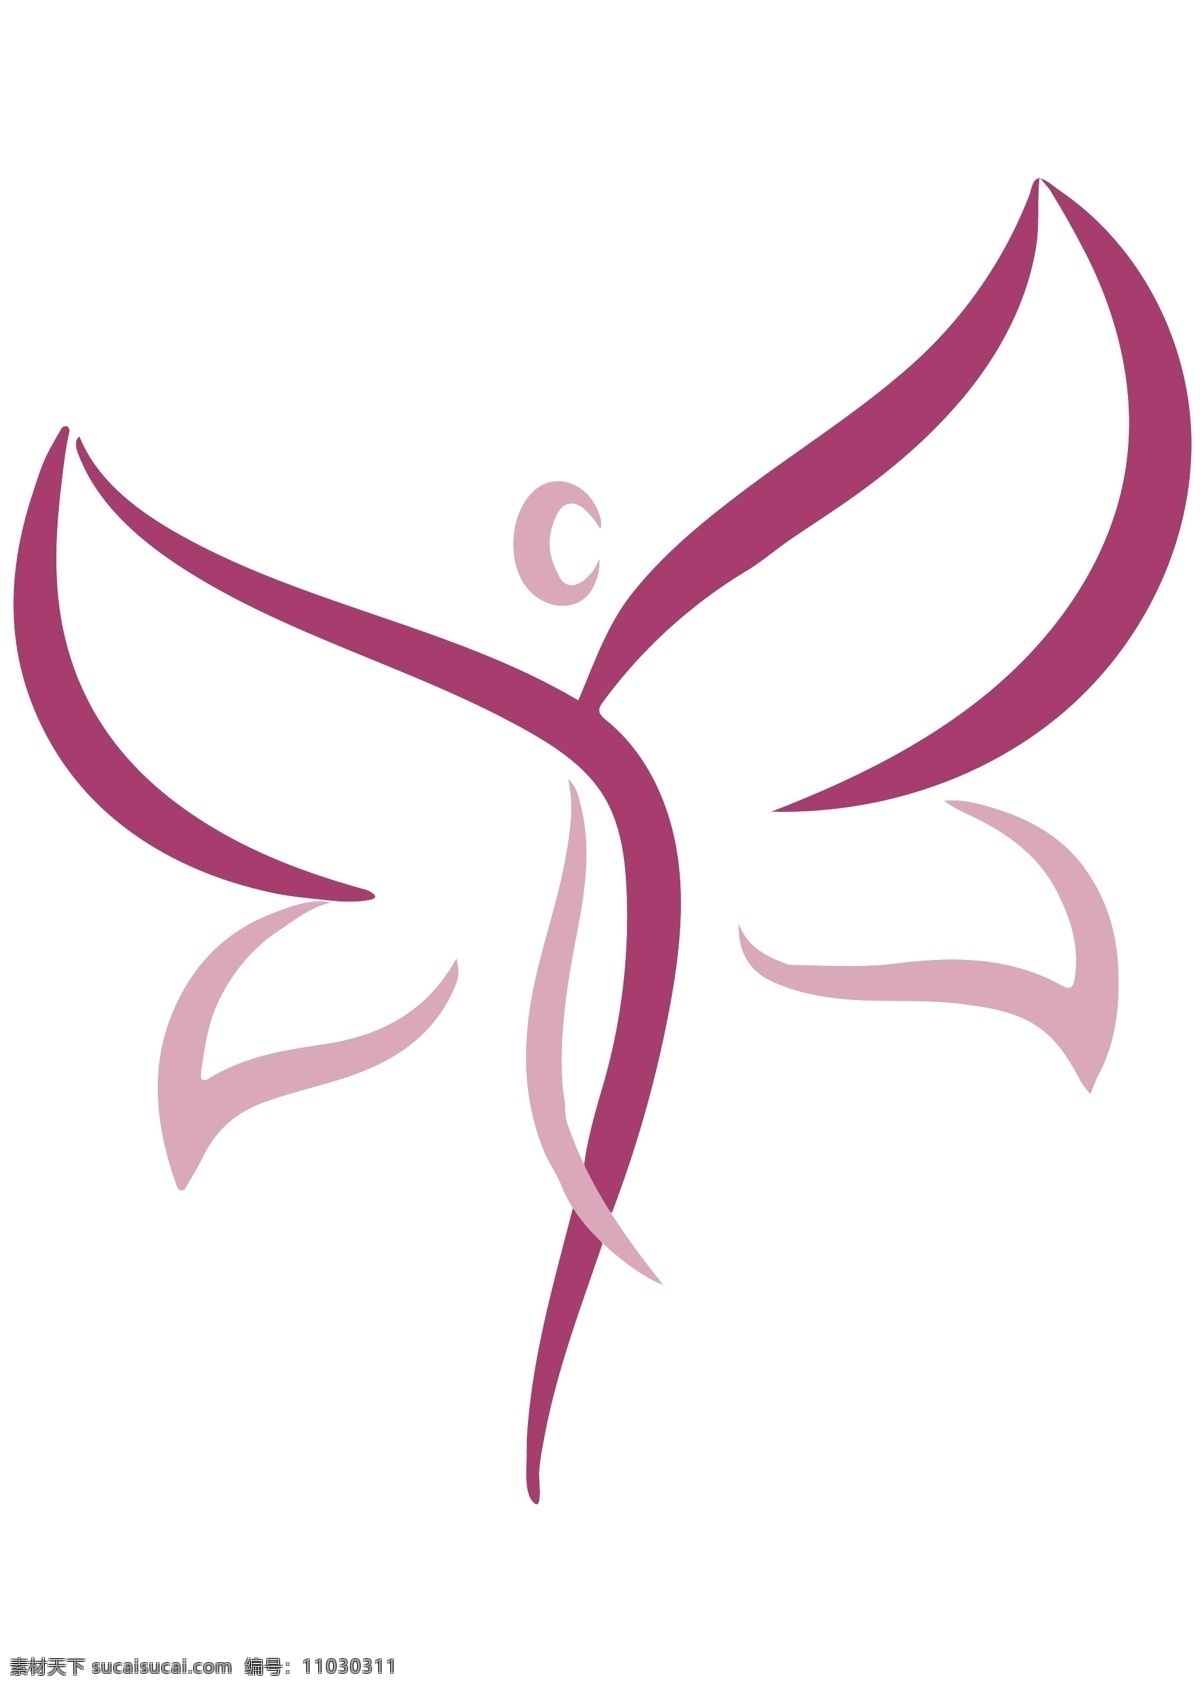 舞蹈标志 舞蹈 芭蕾 瑜伽logo 跳舞 瑜伽 logo 标志 健身 锻炼 修身 养性 标志图标 其他图标